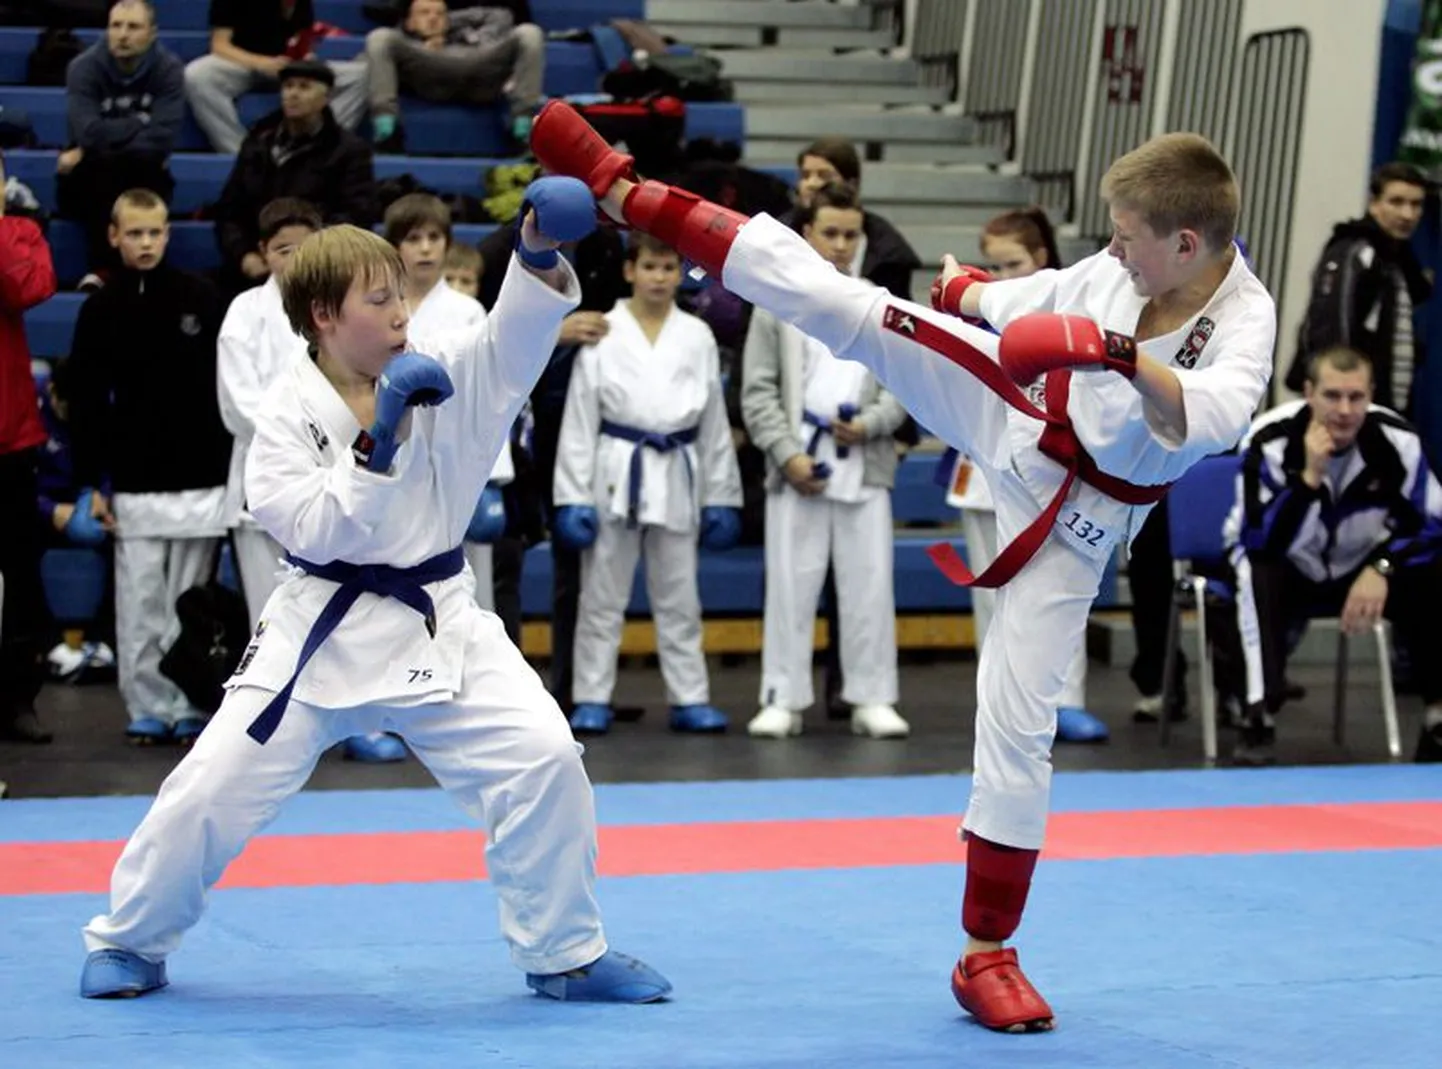 Koolitusprogrammis saab muu hulgas ka karated õppida.